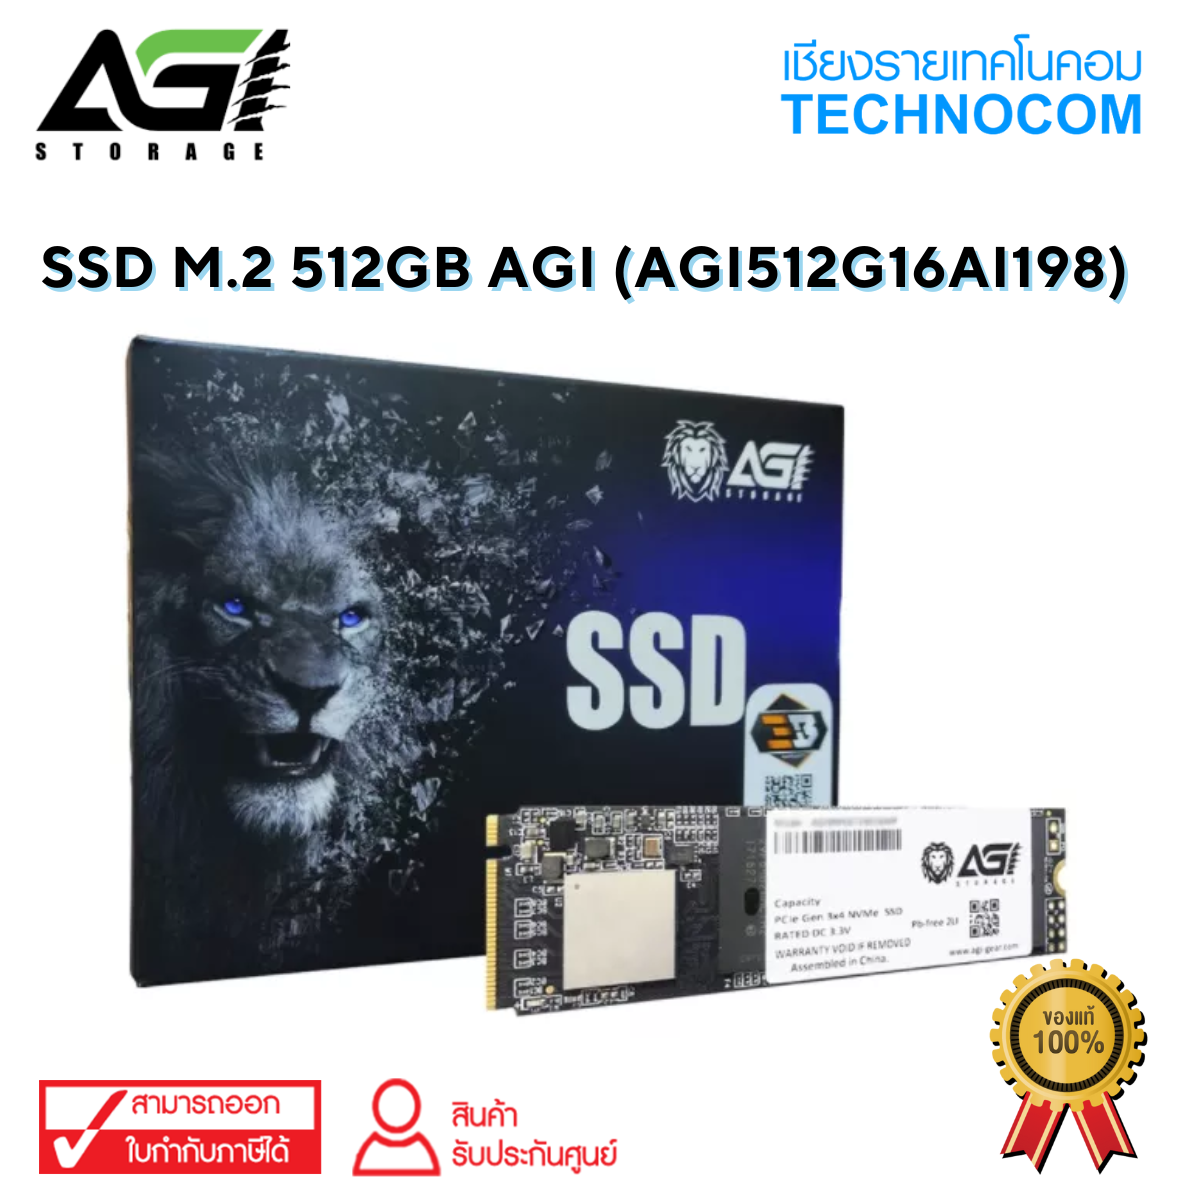 SSD M.2 512GB AGI (AGI512G16AI198)